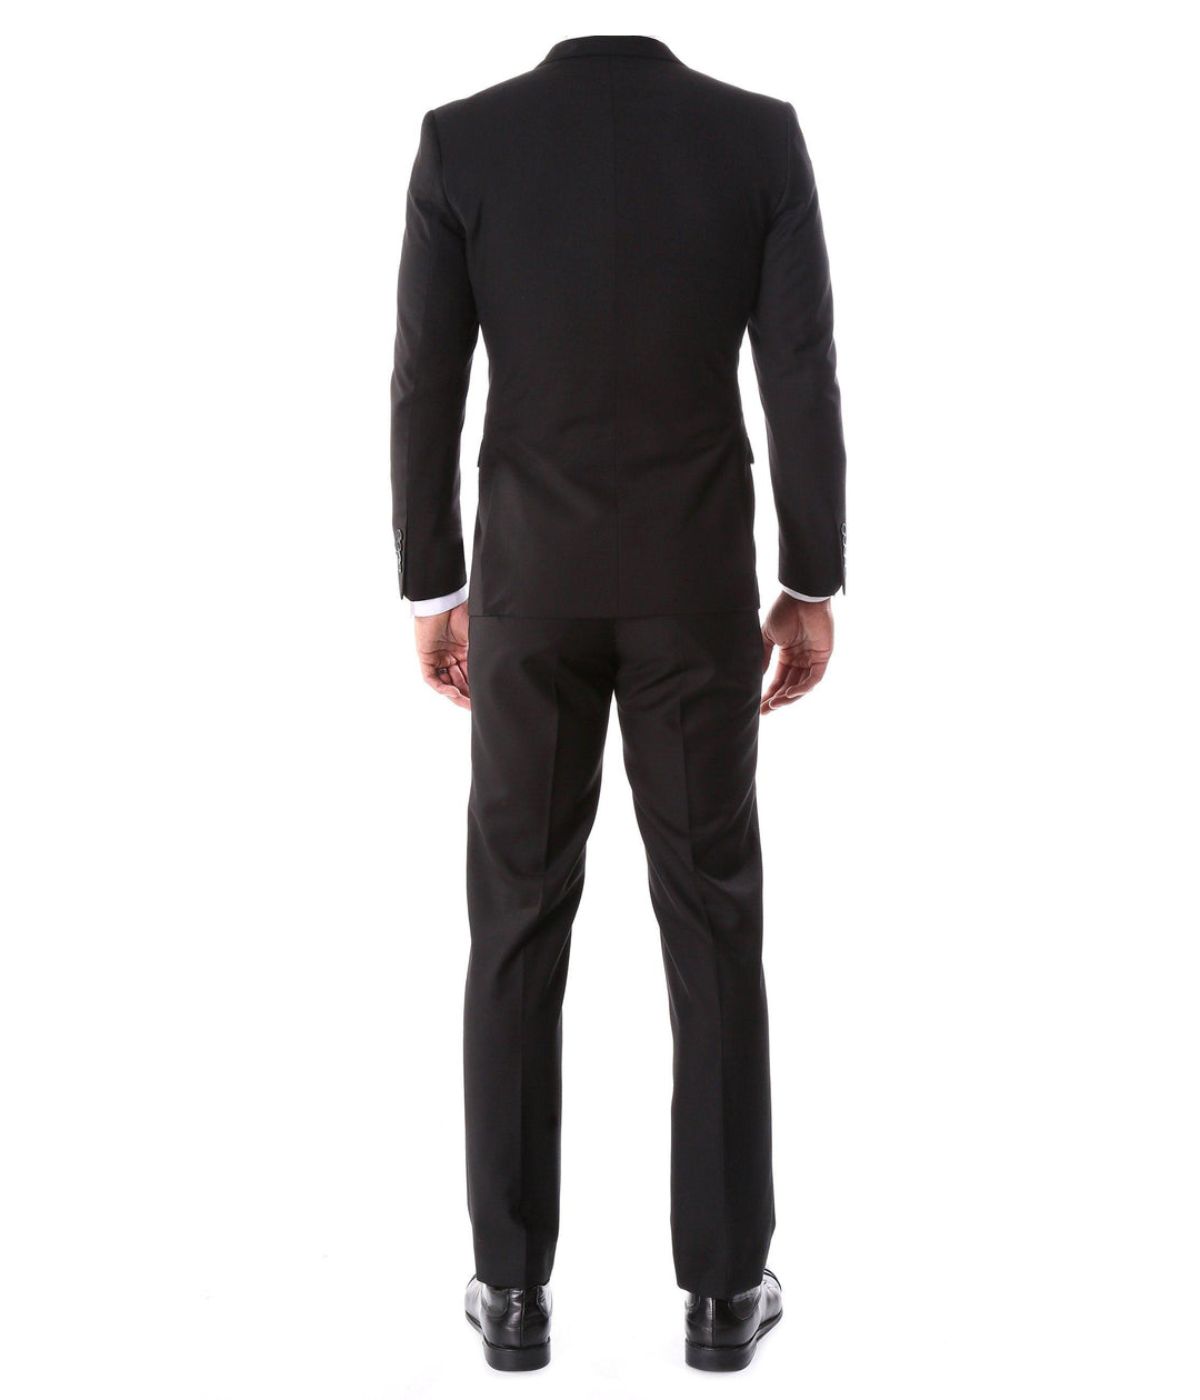 Men's Modern Fit Suits Two Piece Two Button Notch Lapel Suit Black